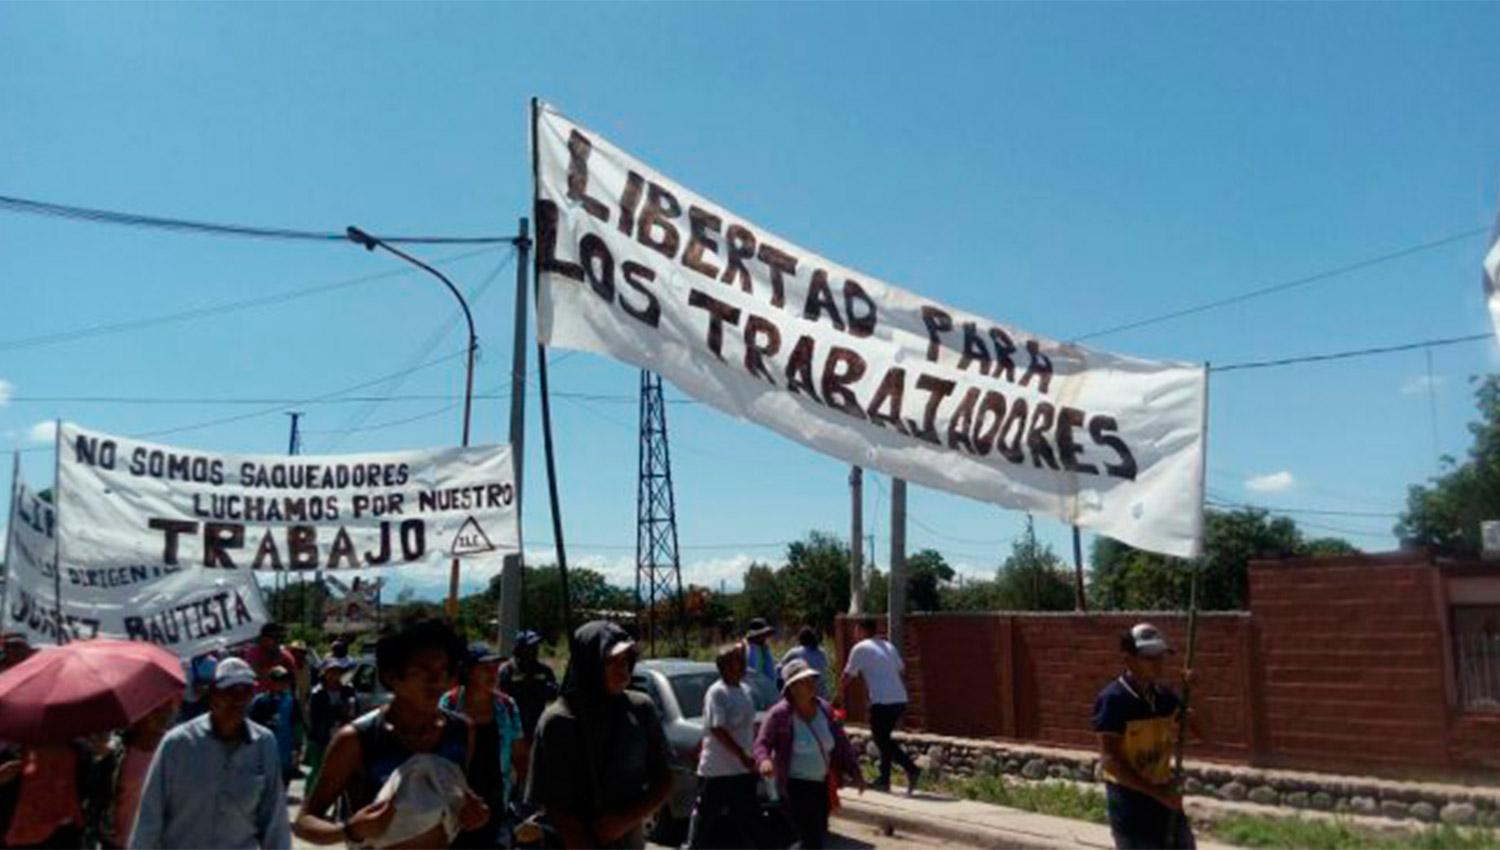 MANIFESTACIÓN. Hubo protestas en San Pedro exigiendo la libertad de los trabajadores. FOTO TOMADA DE LAIZQUIERDADIARIO.COM